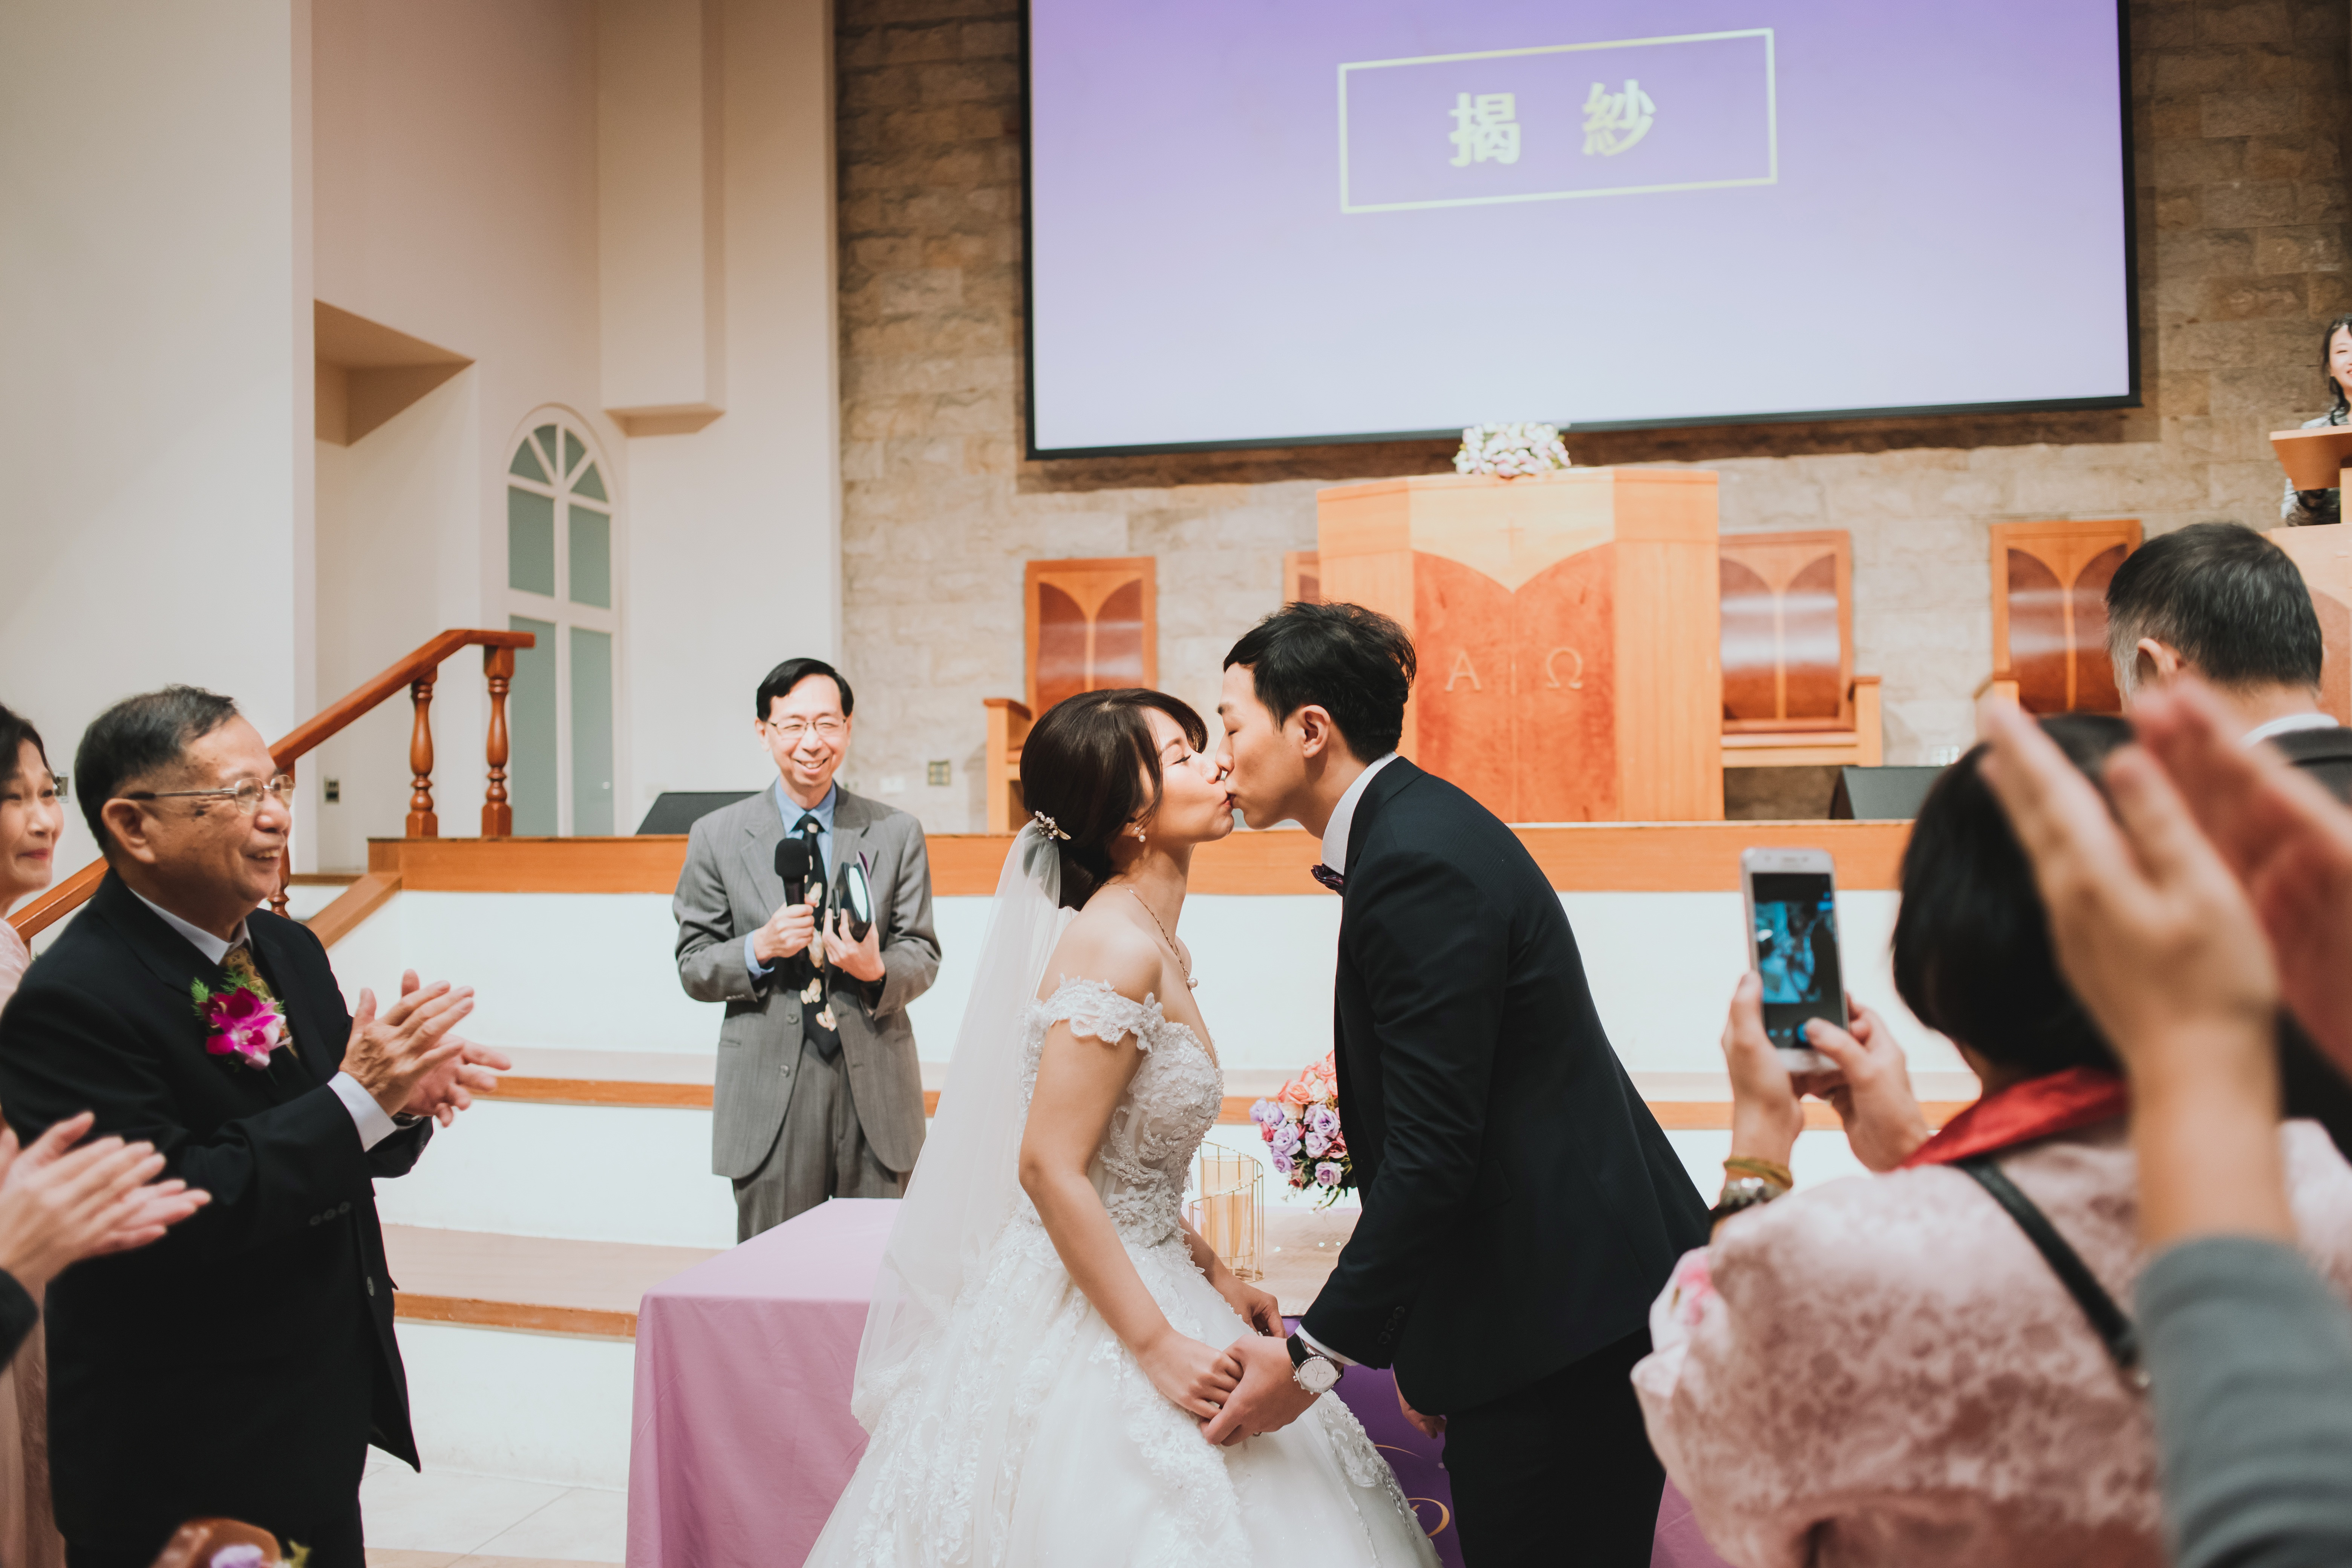 【婚禮攝影】結婚誓言與交換婚戒4